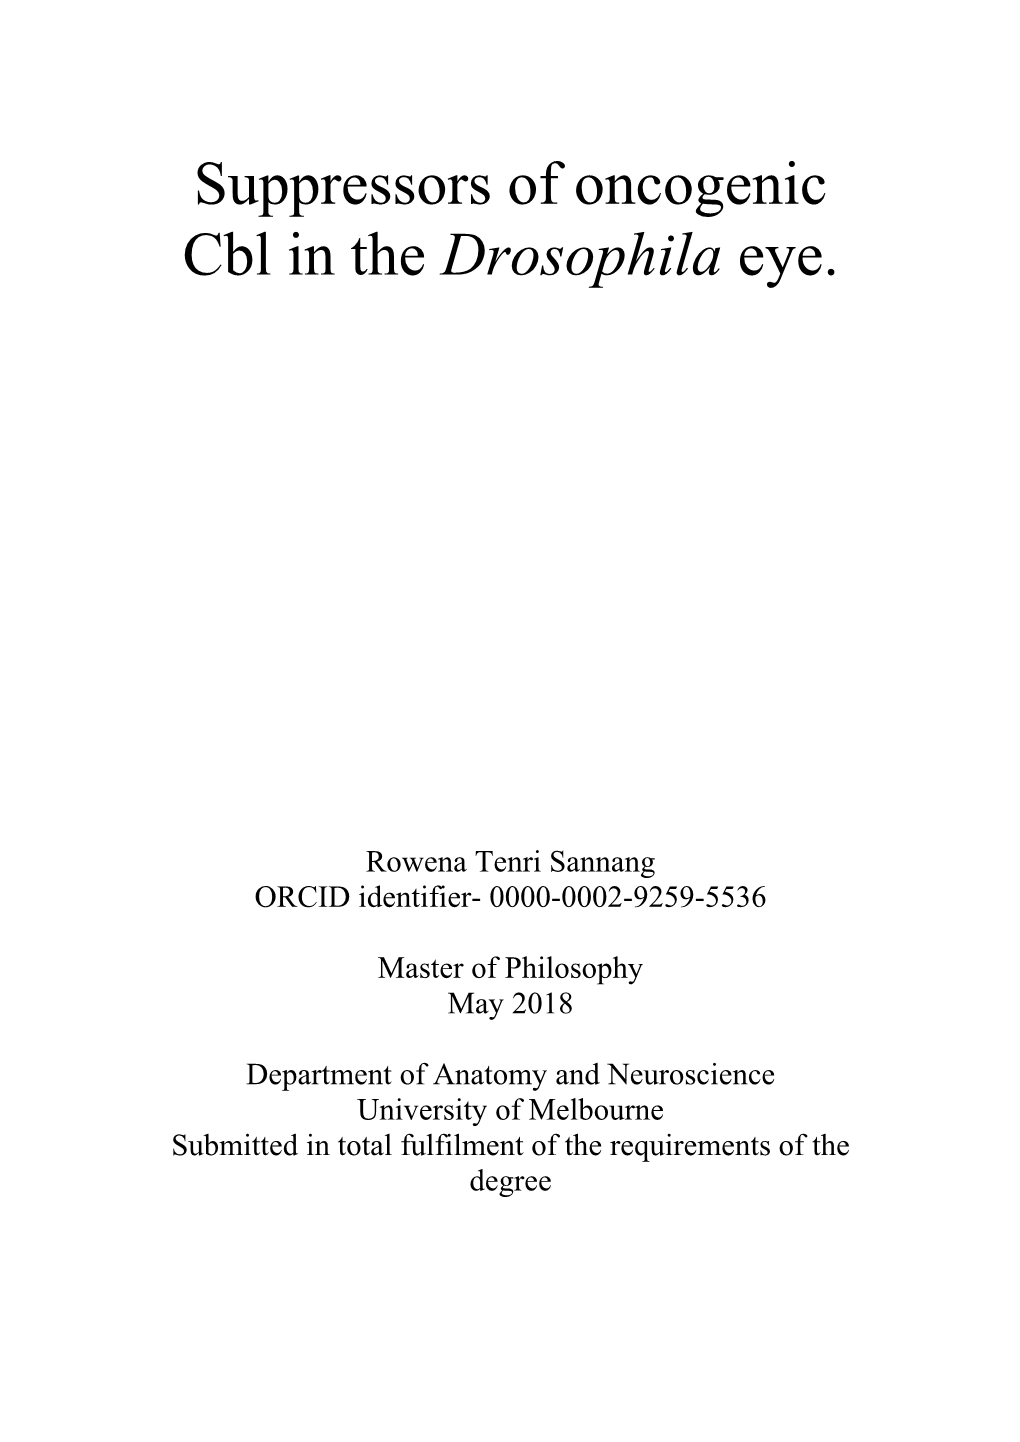 Suppressors of Oncogenic Cbl in the Drosophila Eye